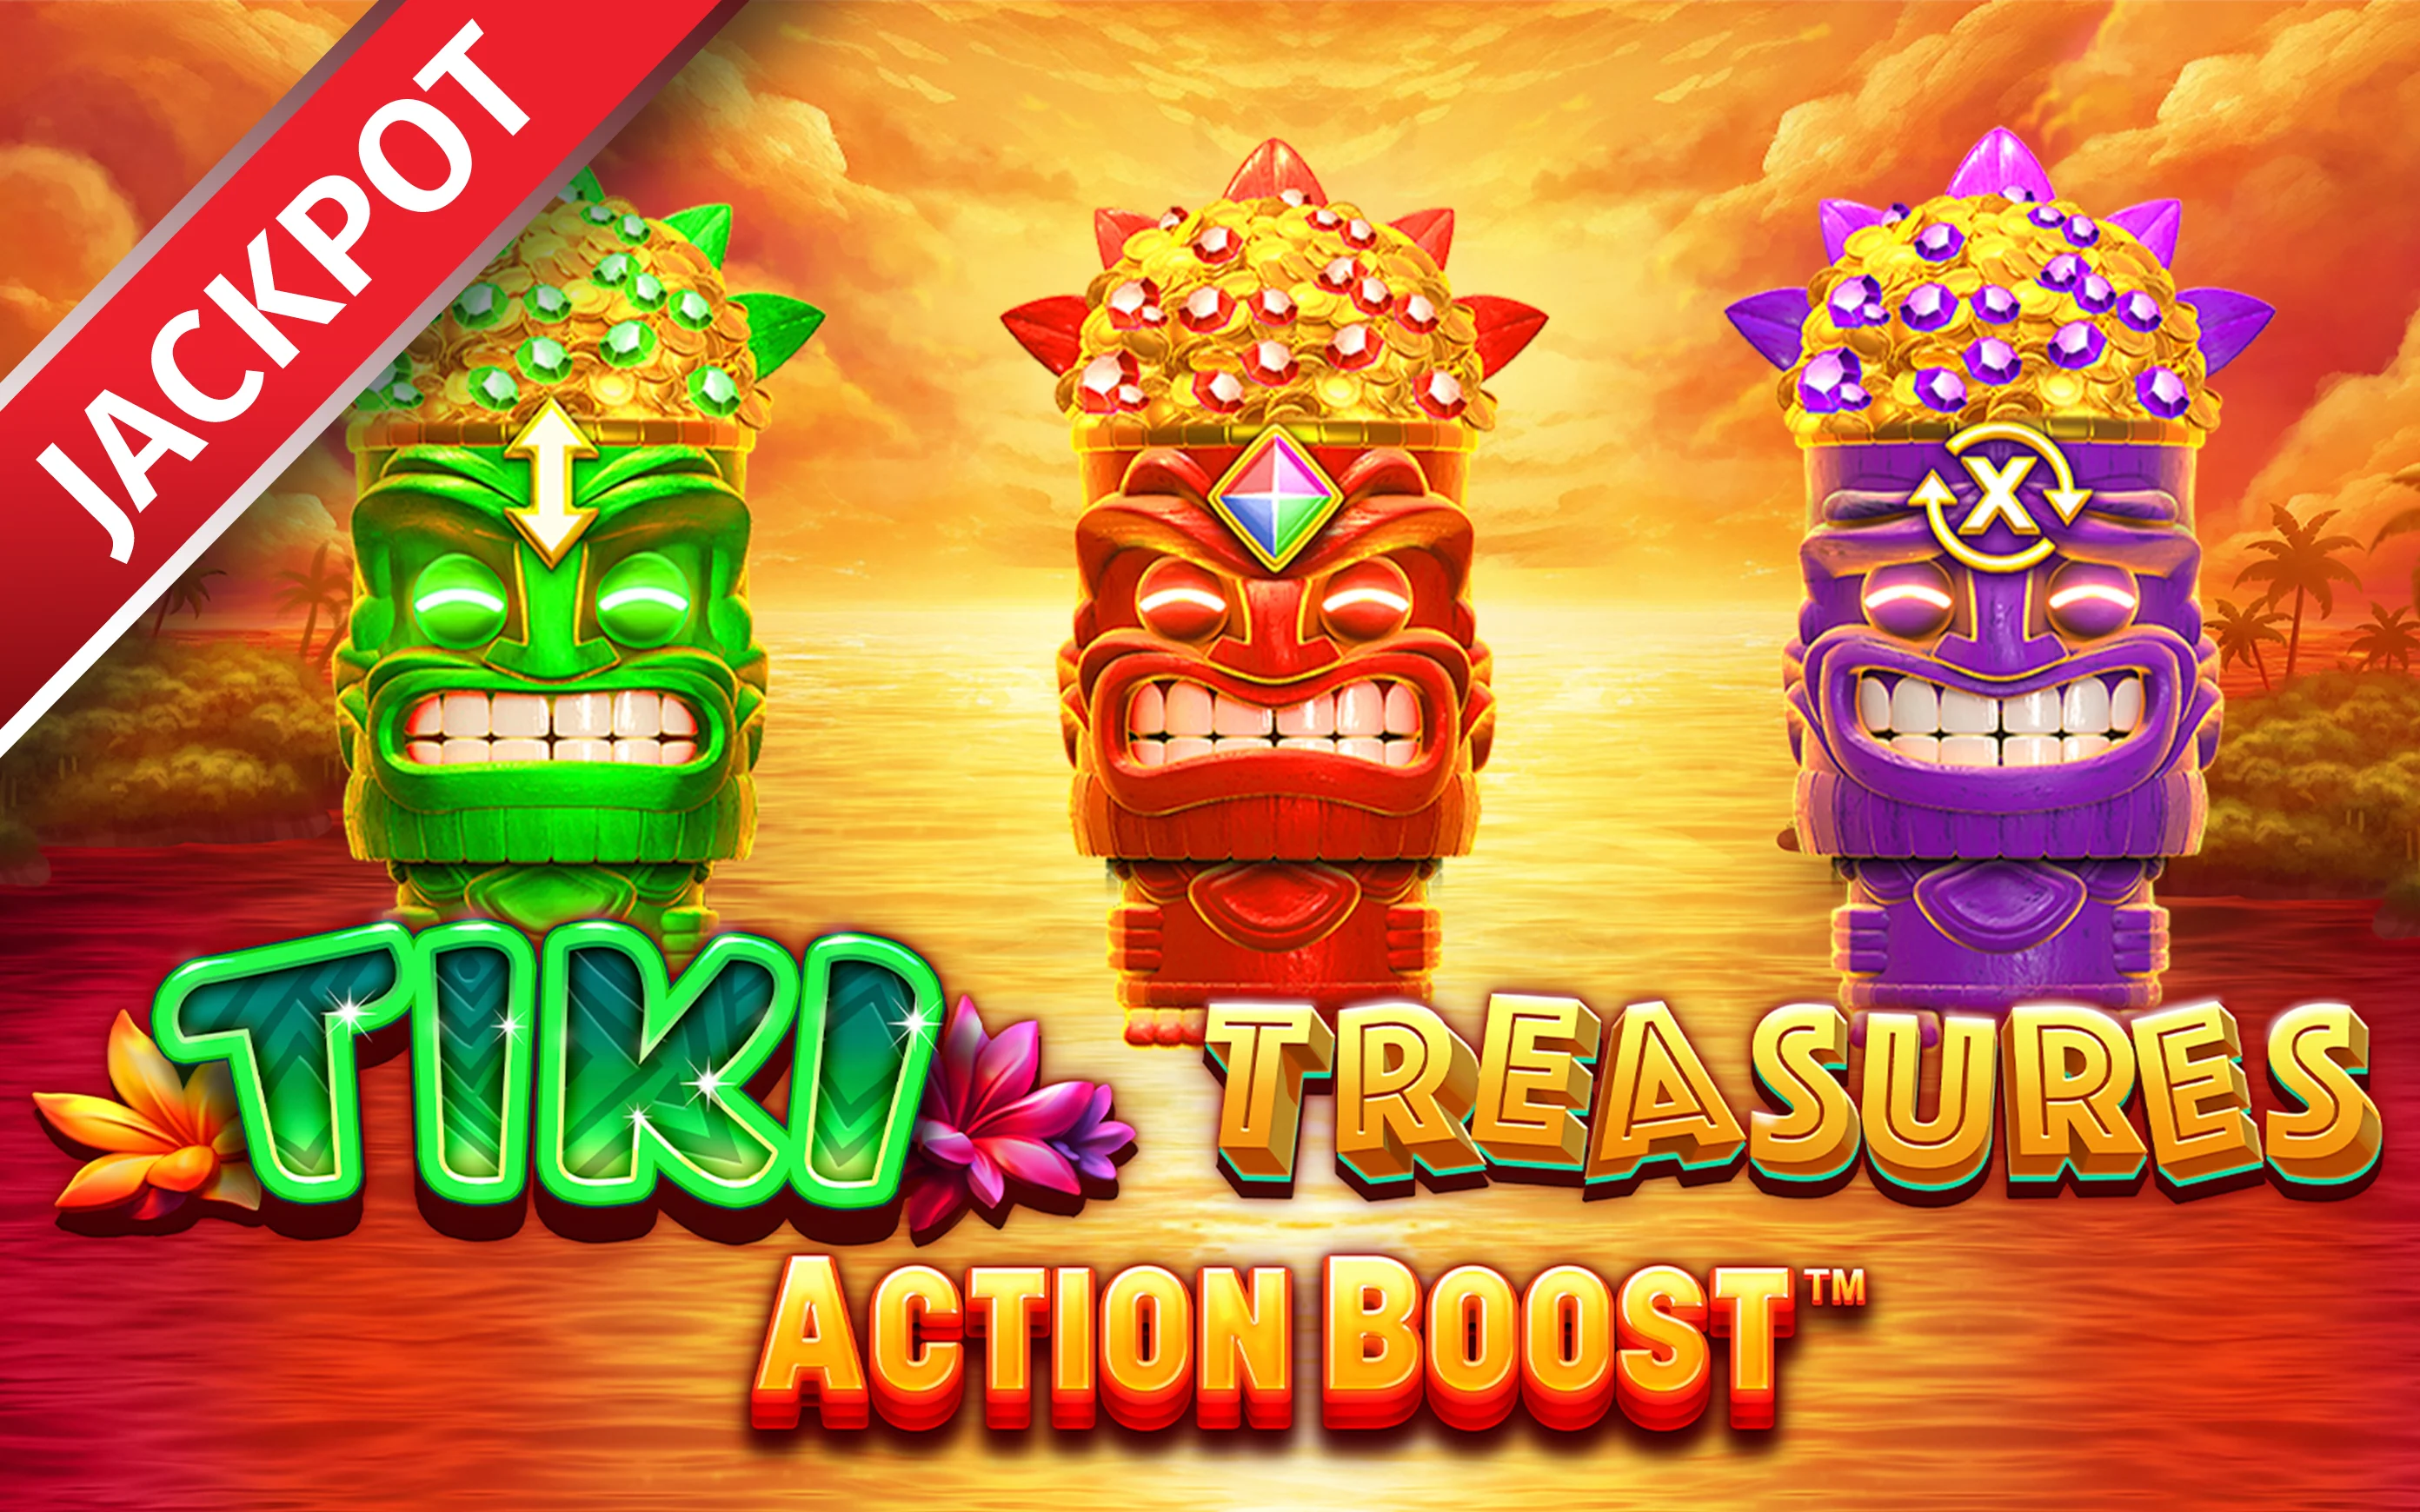 Spielen Sie Action Boost™ Tiki Treasures auf Starcasino.be-Online-Casino